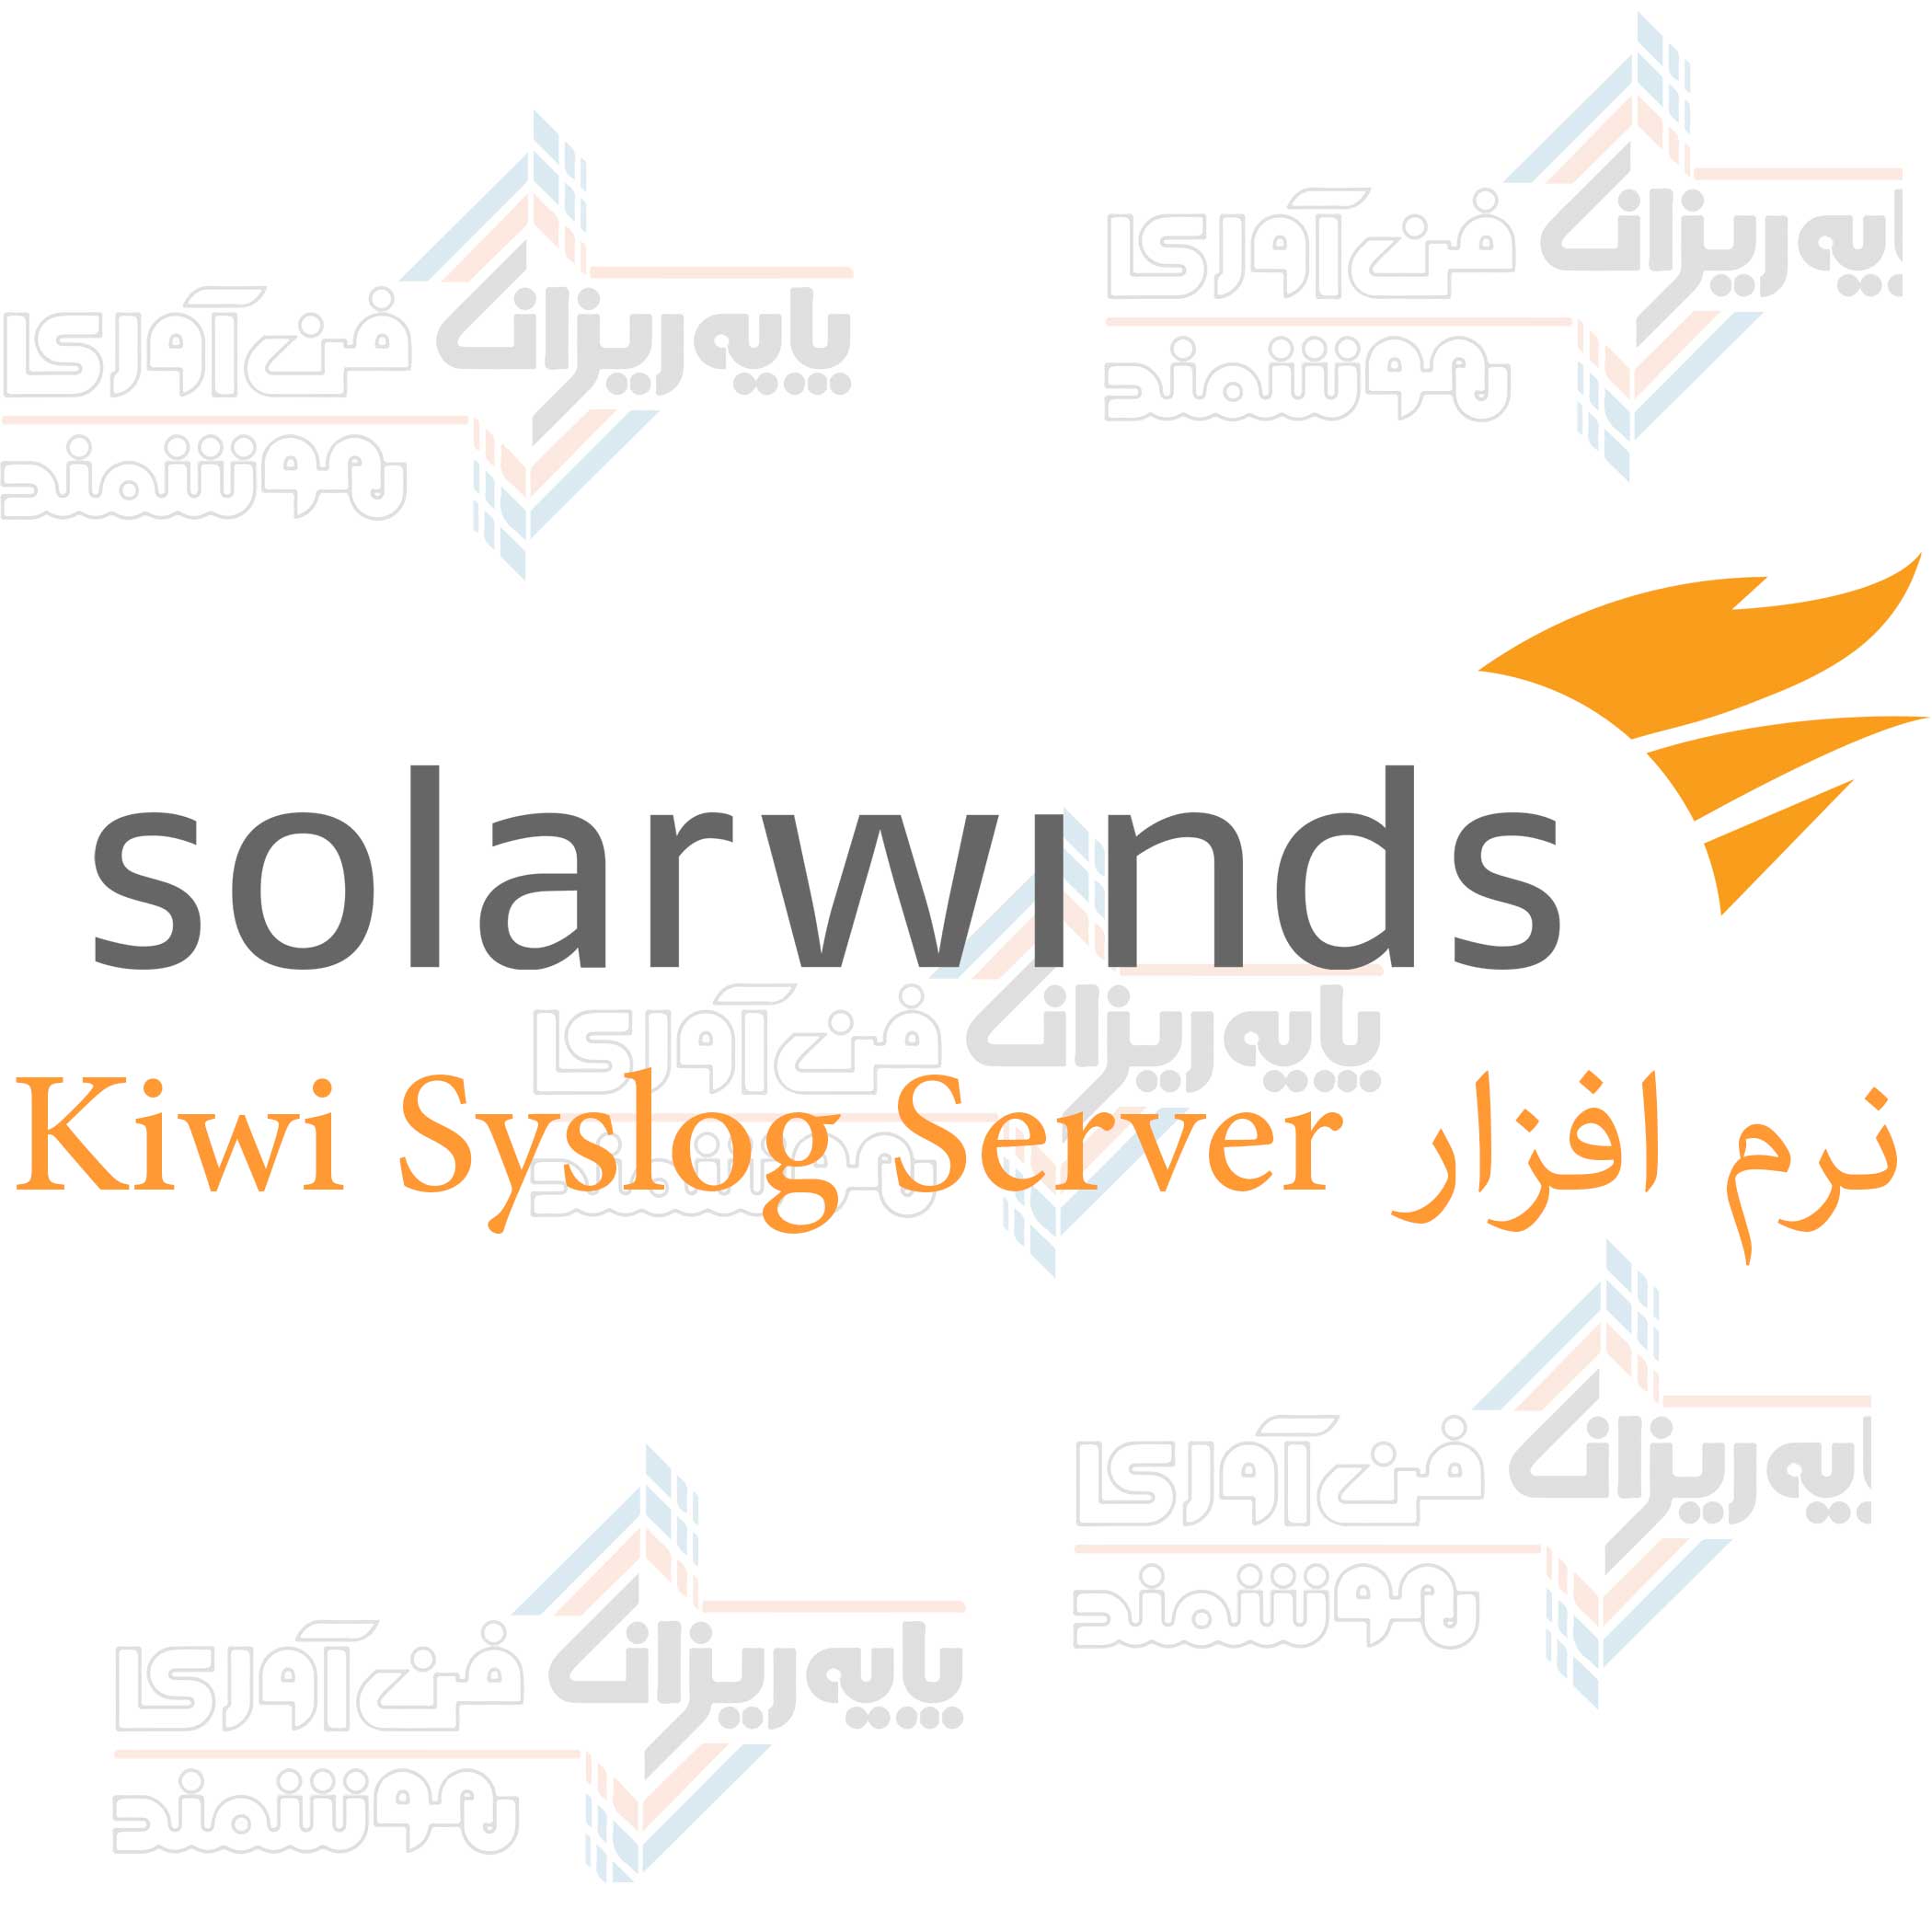 نرم افزار Kiwi Syslog Server